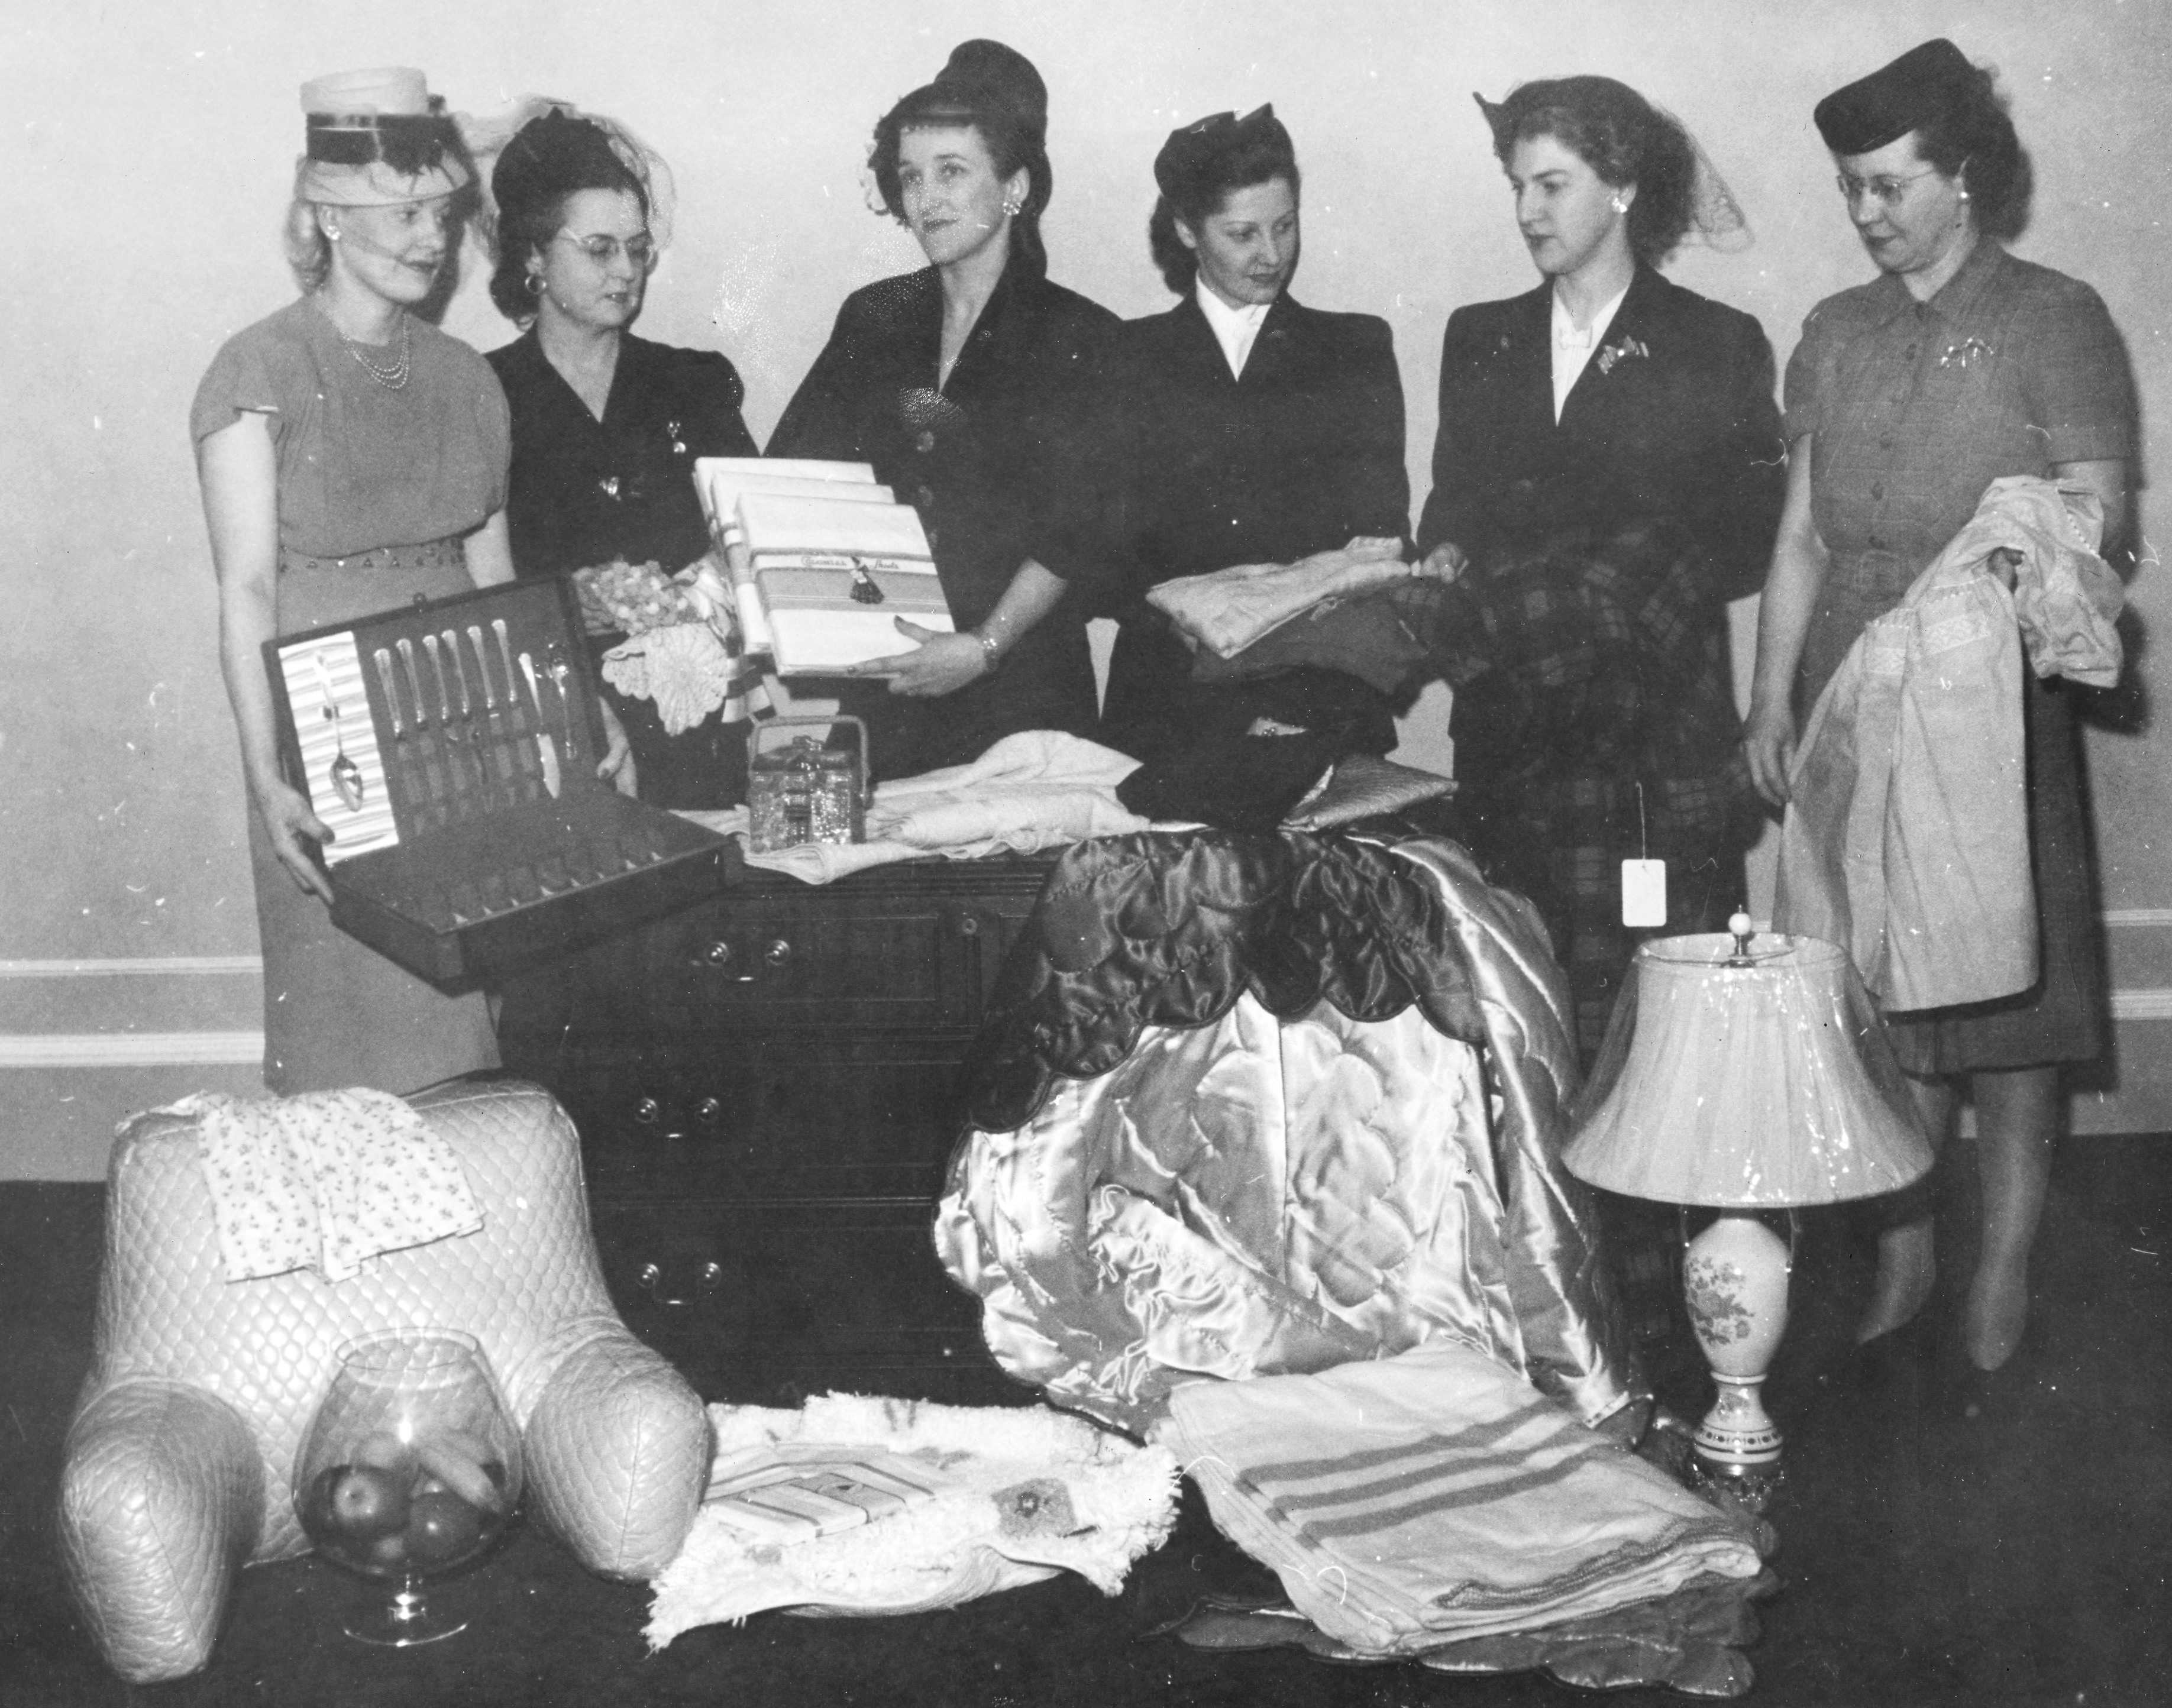 Six femmes en tenue formelle se tiennent derrière un arrangement d’objets ménagers dans une photo en noir et blanc. 